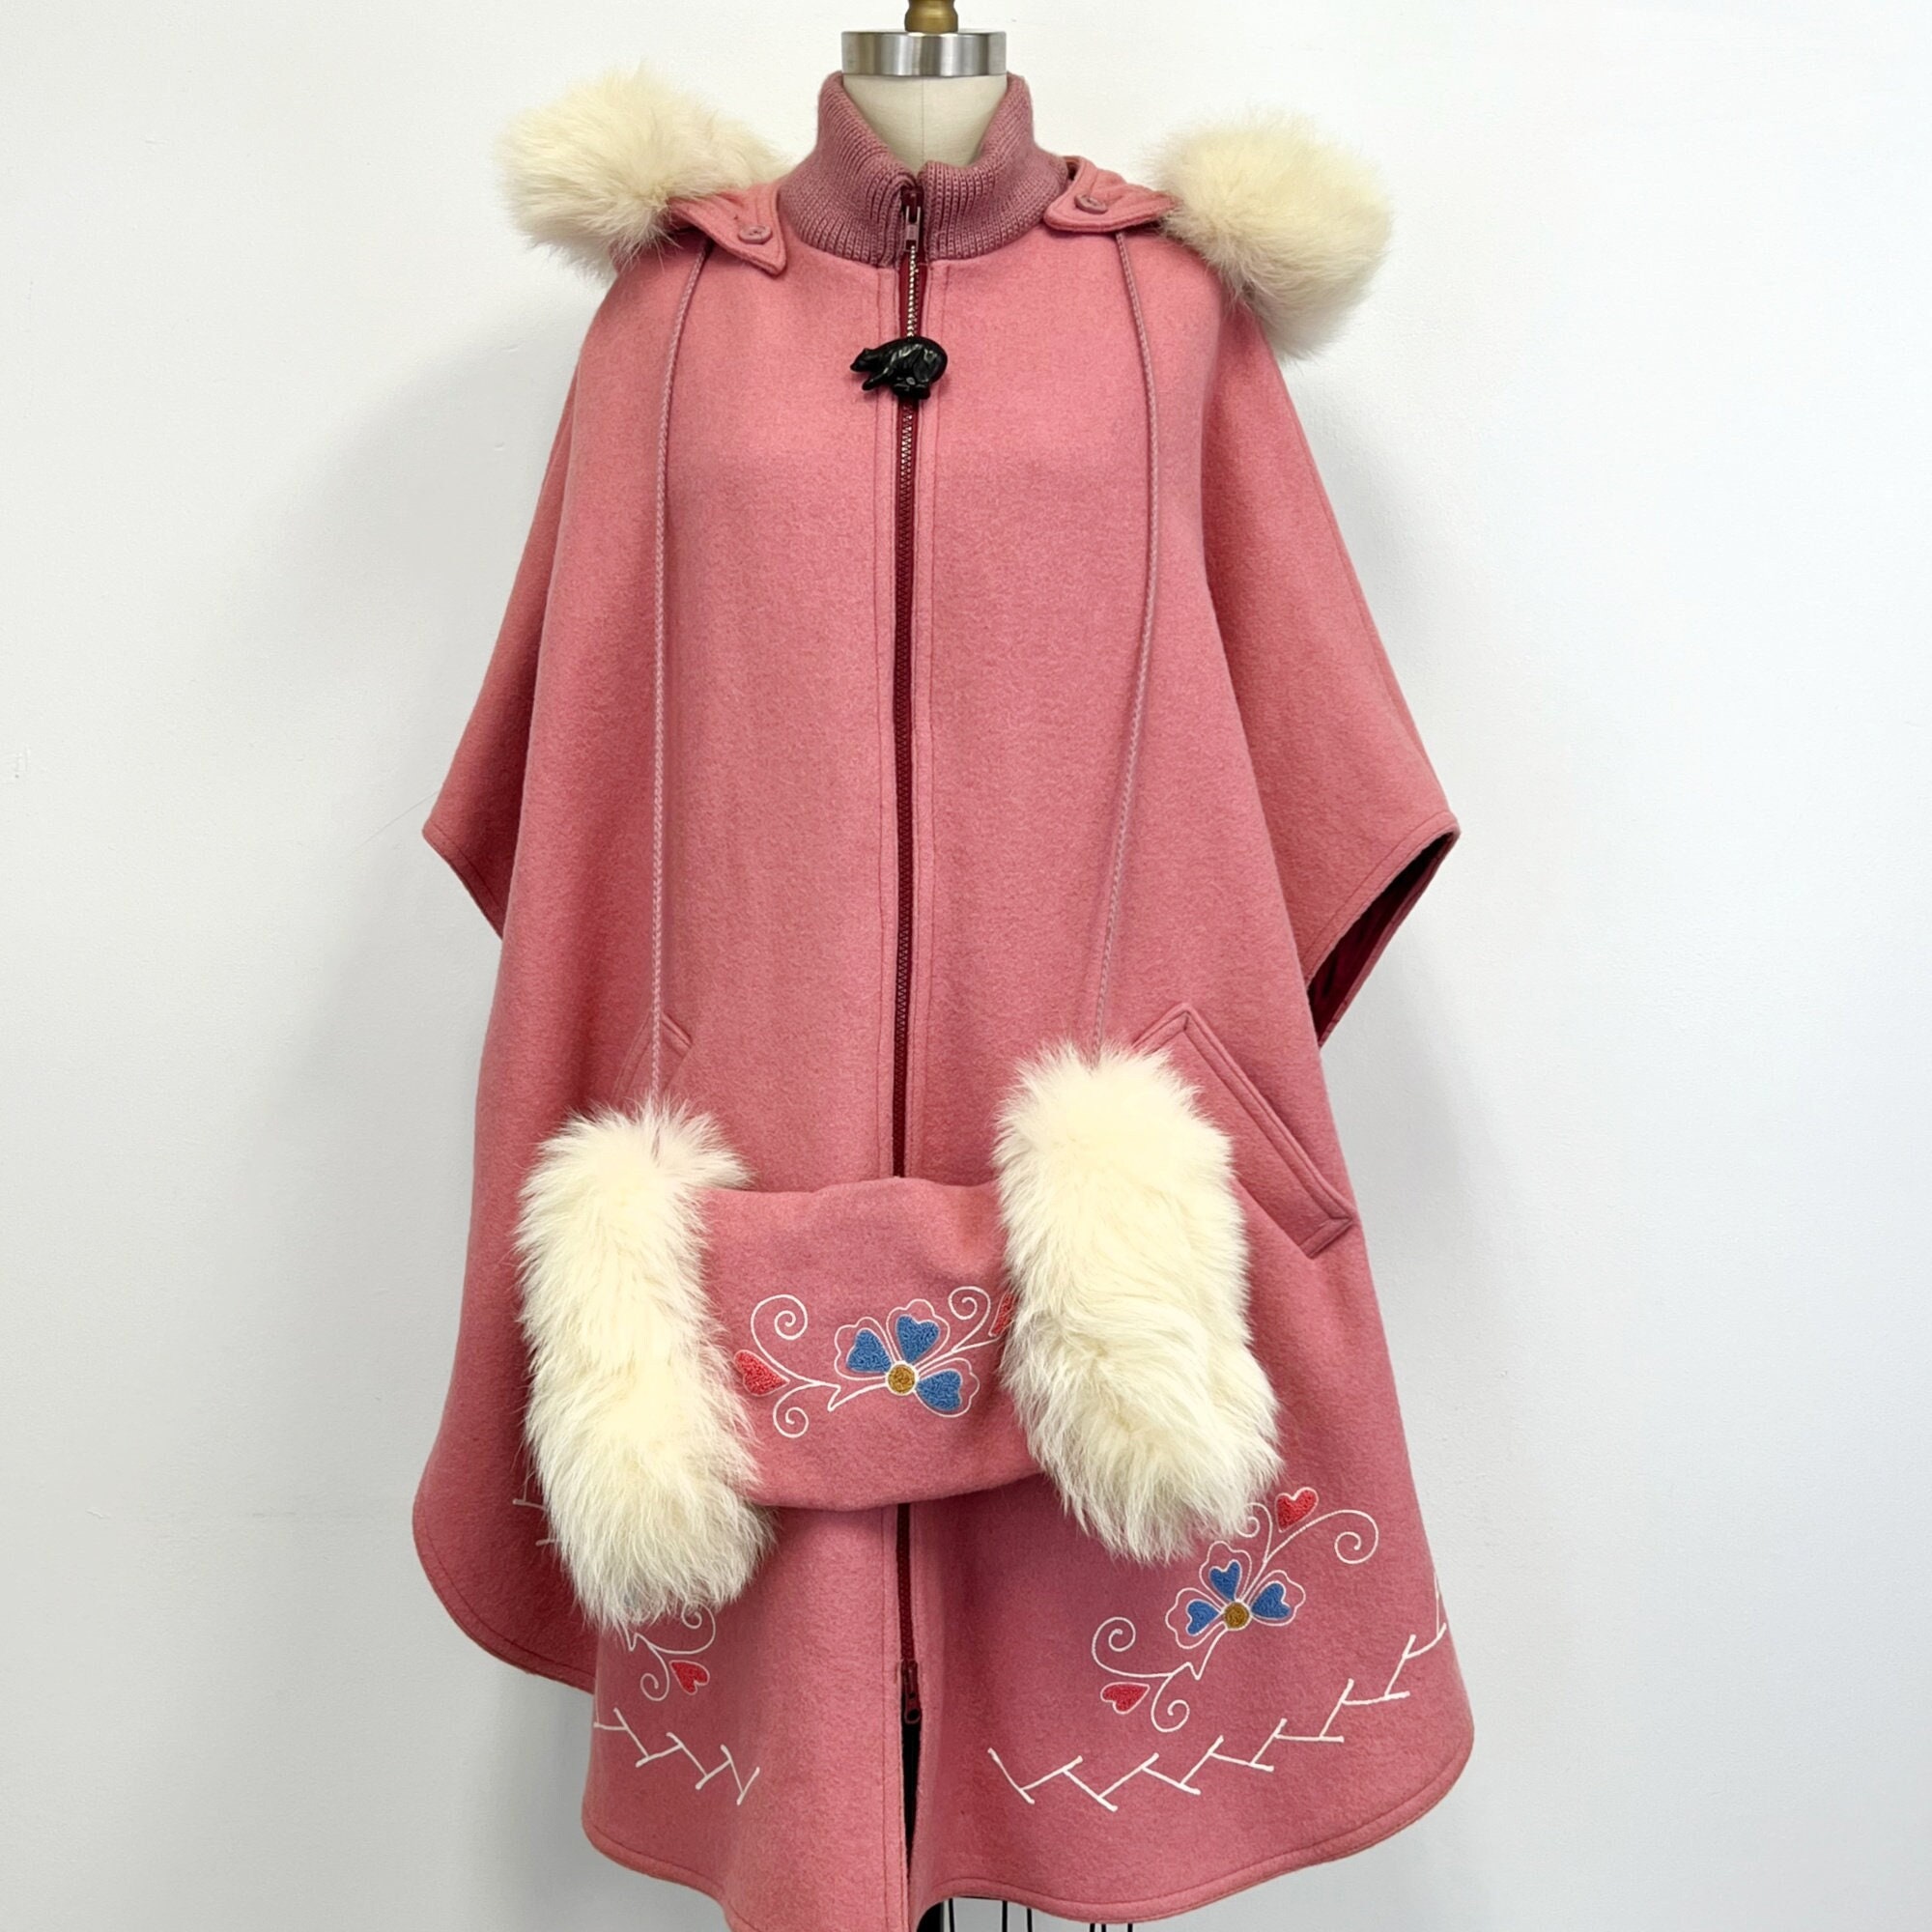 Ash Winter Coat Fur Poncho Grey Eskimo Coat Burning Man 